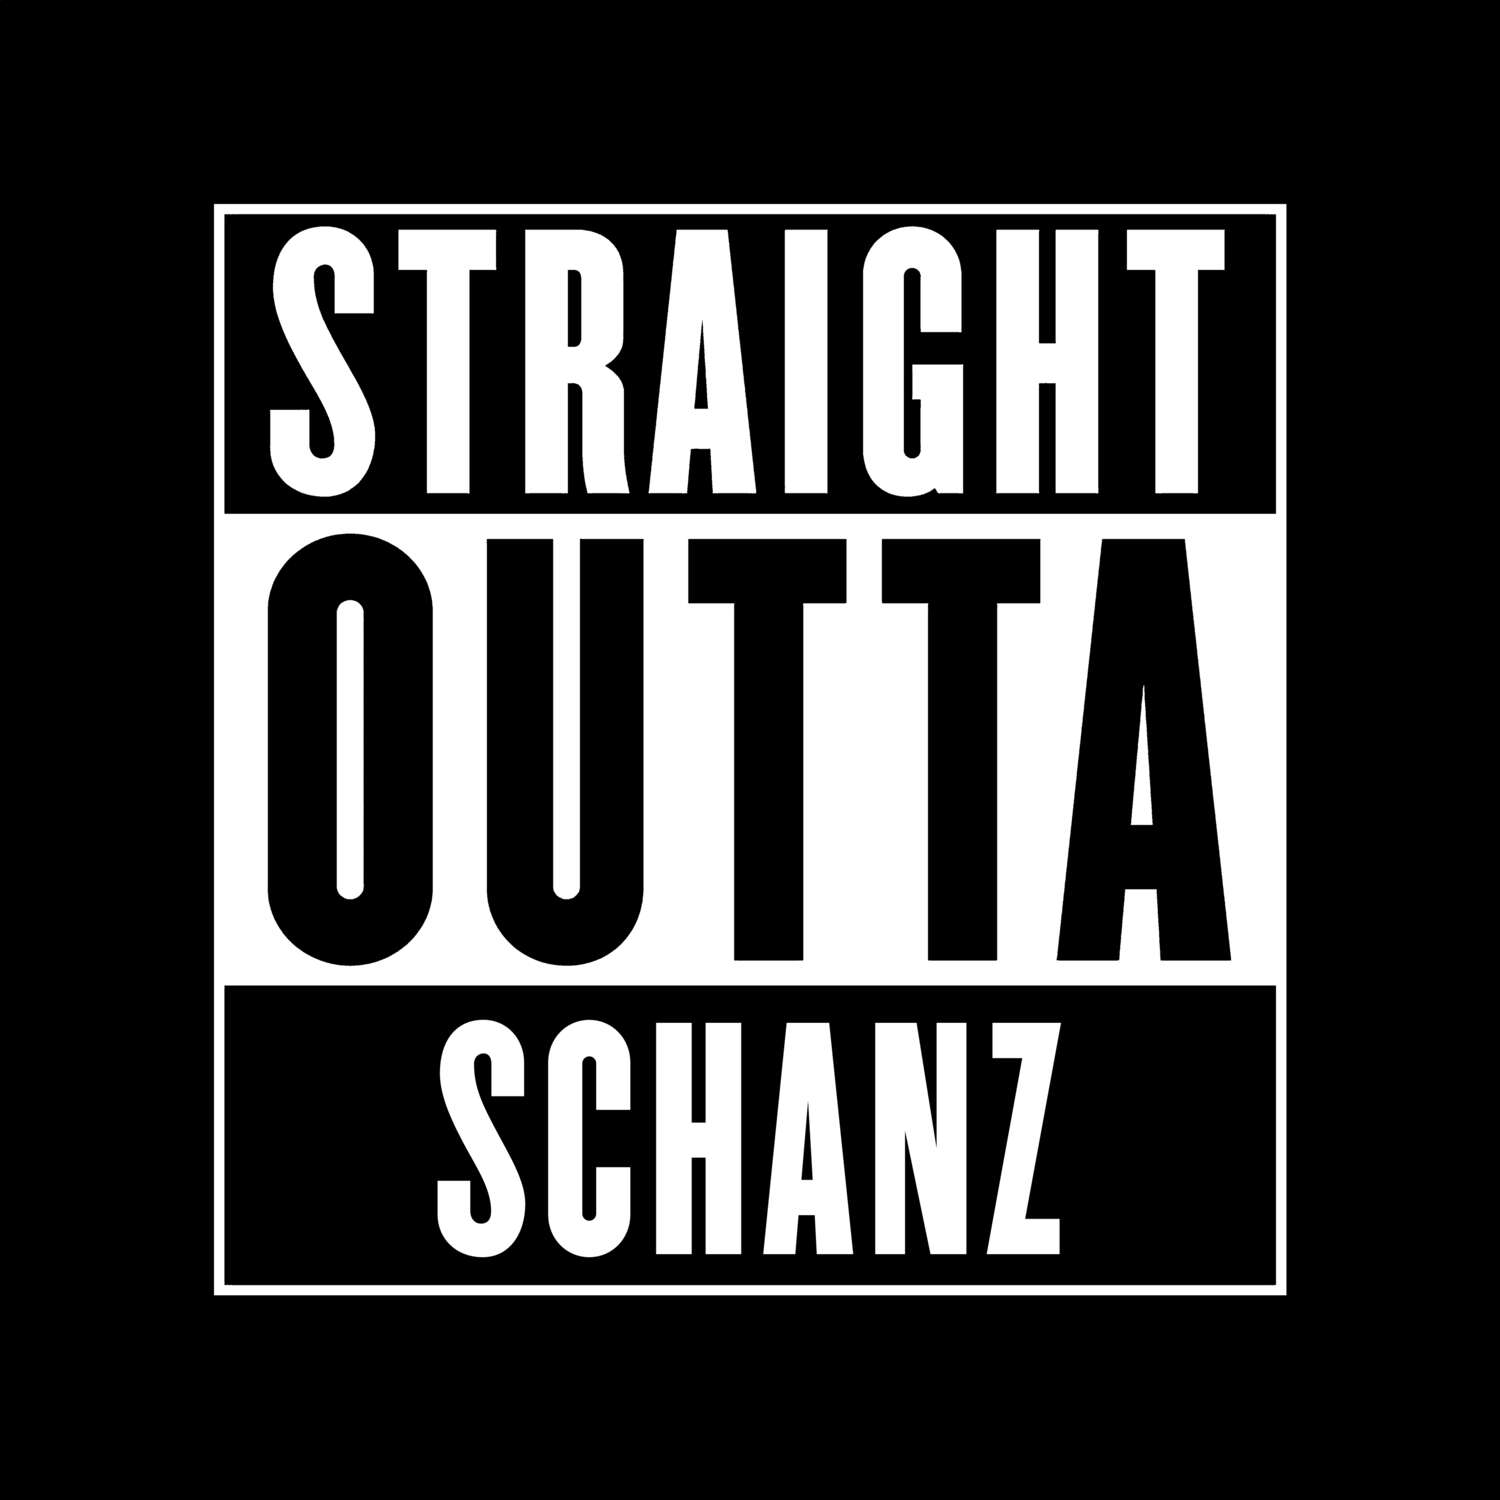 Schanz T-Shirt »Straight Outta«